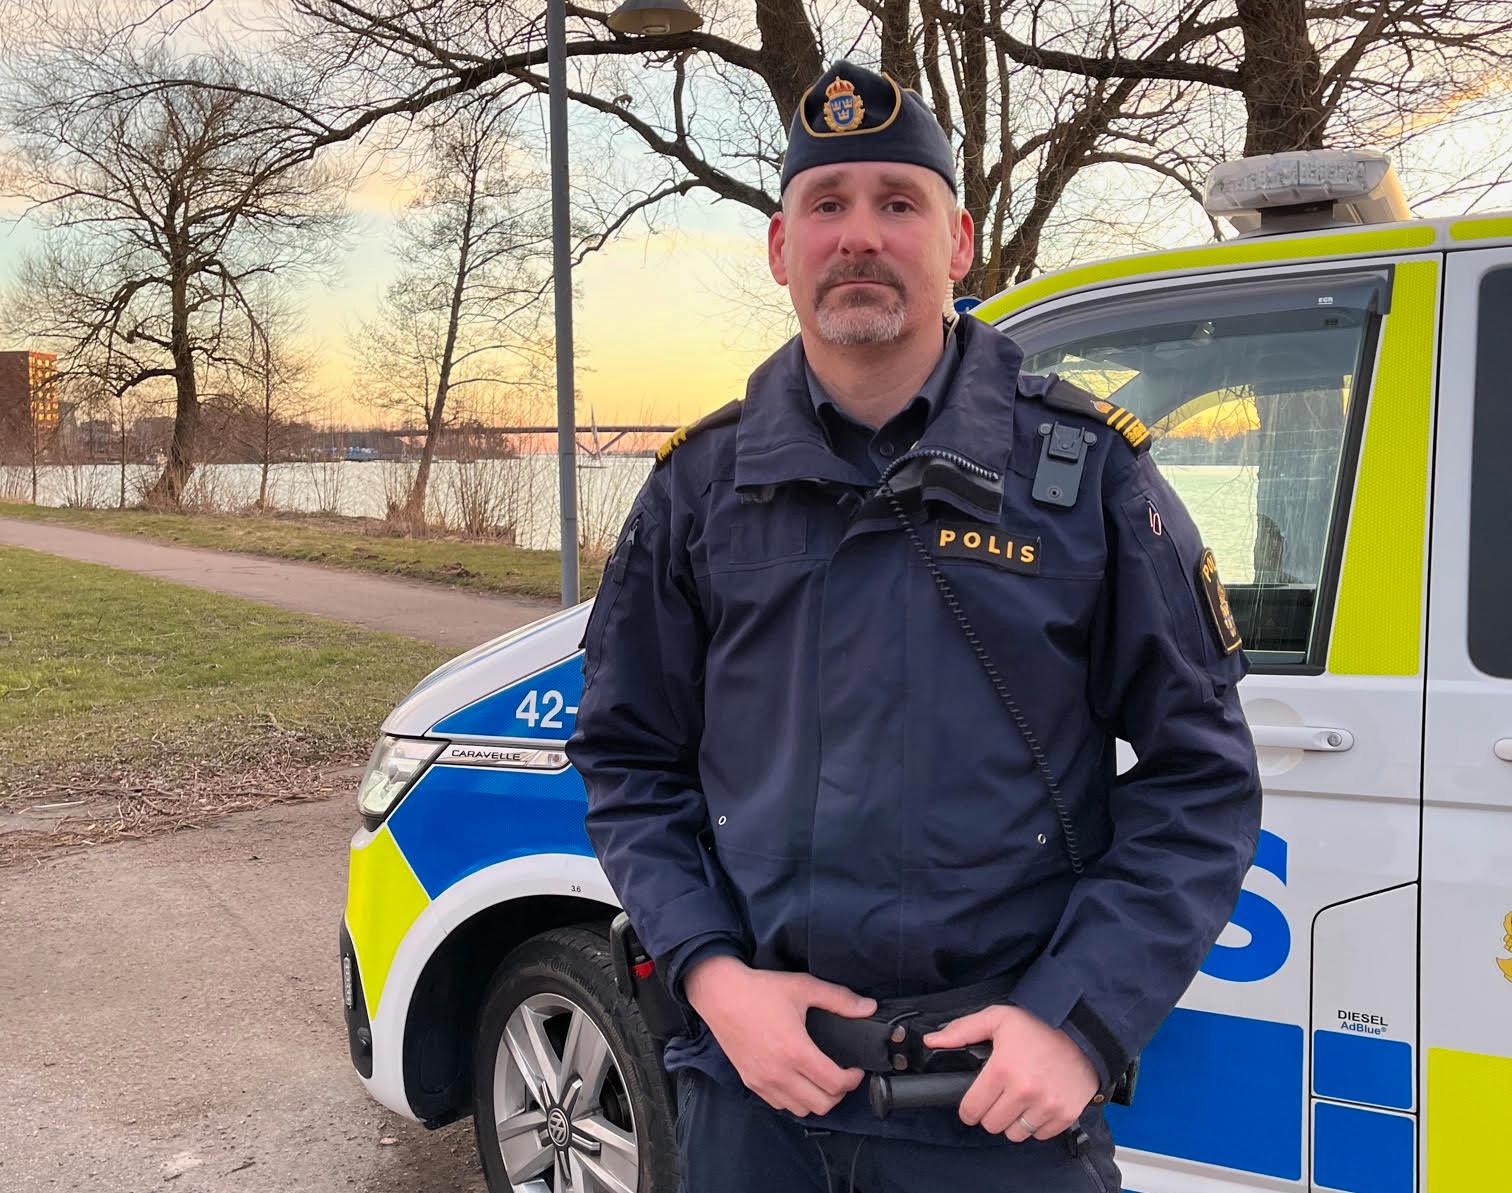 Polisen Björn har arbetat under de senaste dygnens upplopp. Under sina 15 år som polis har han aldrig mött ett så stort våldskapital, berättar han.